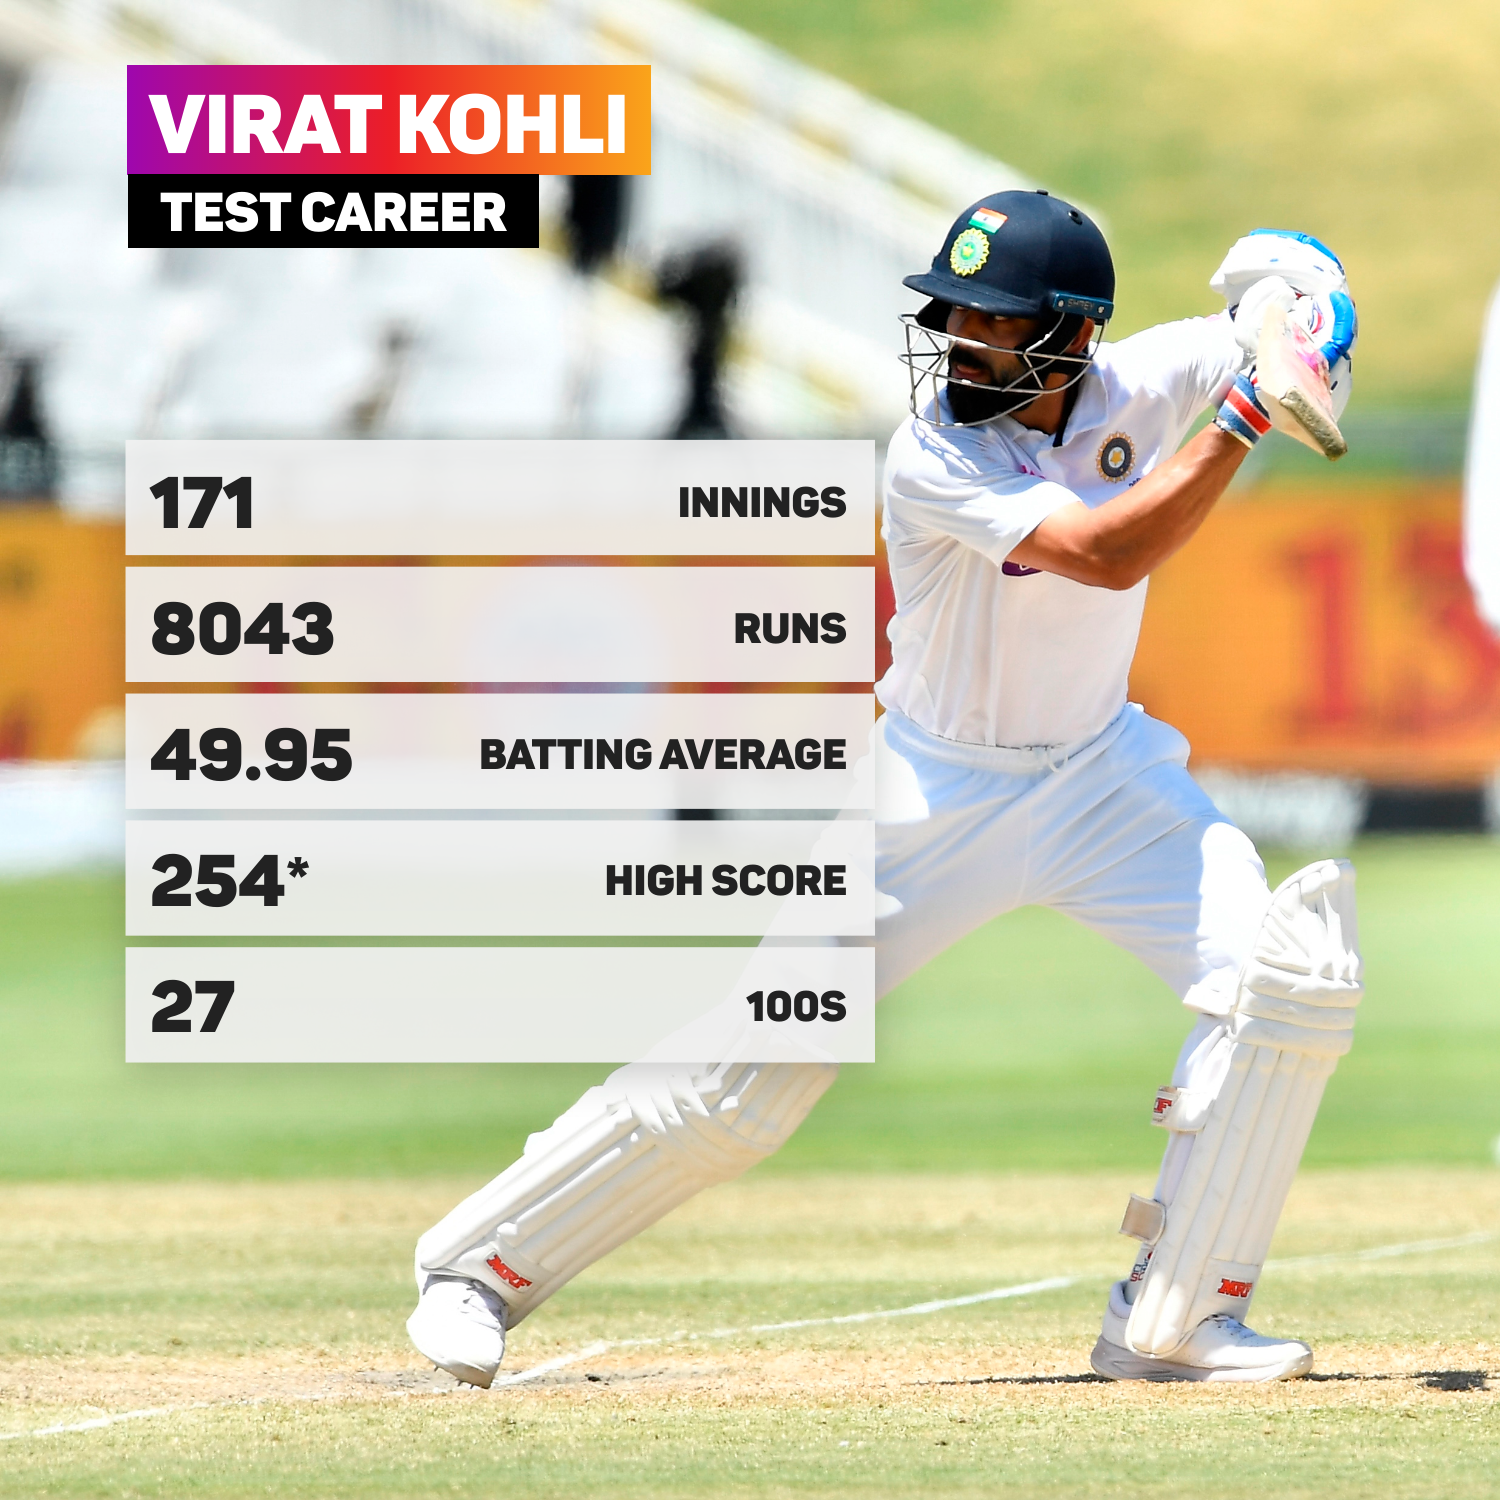 Virat Kohli's Test career